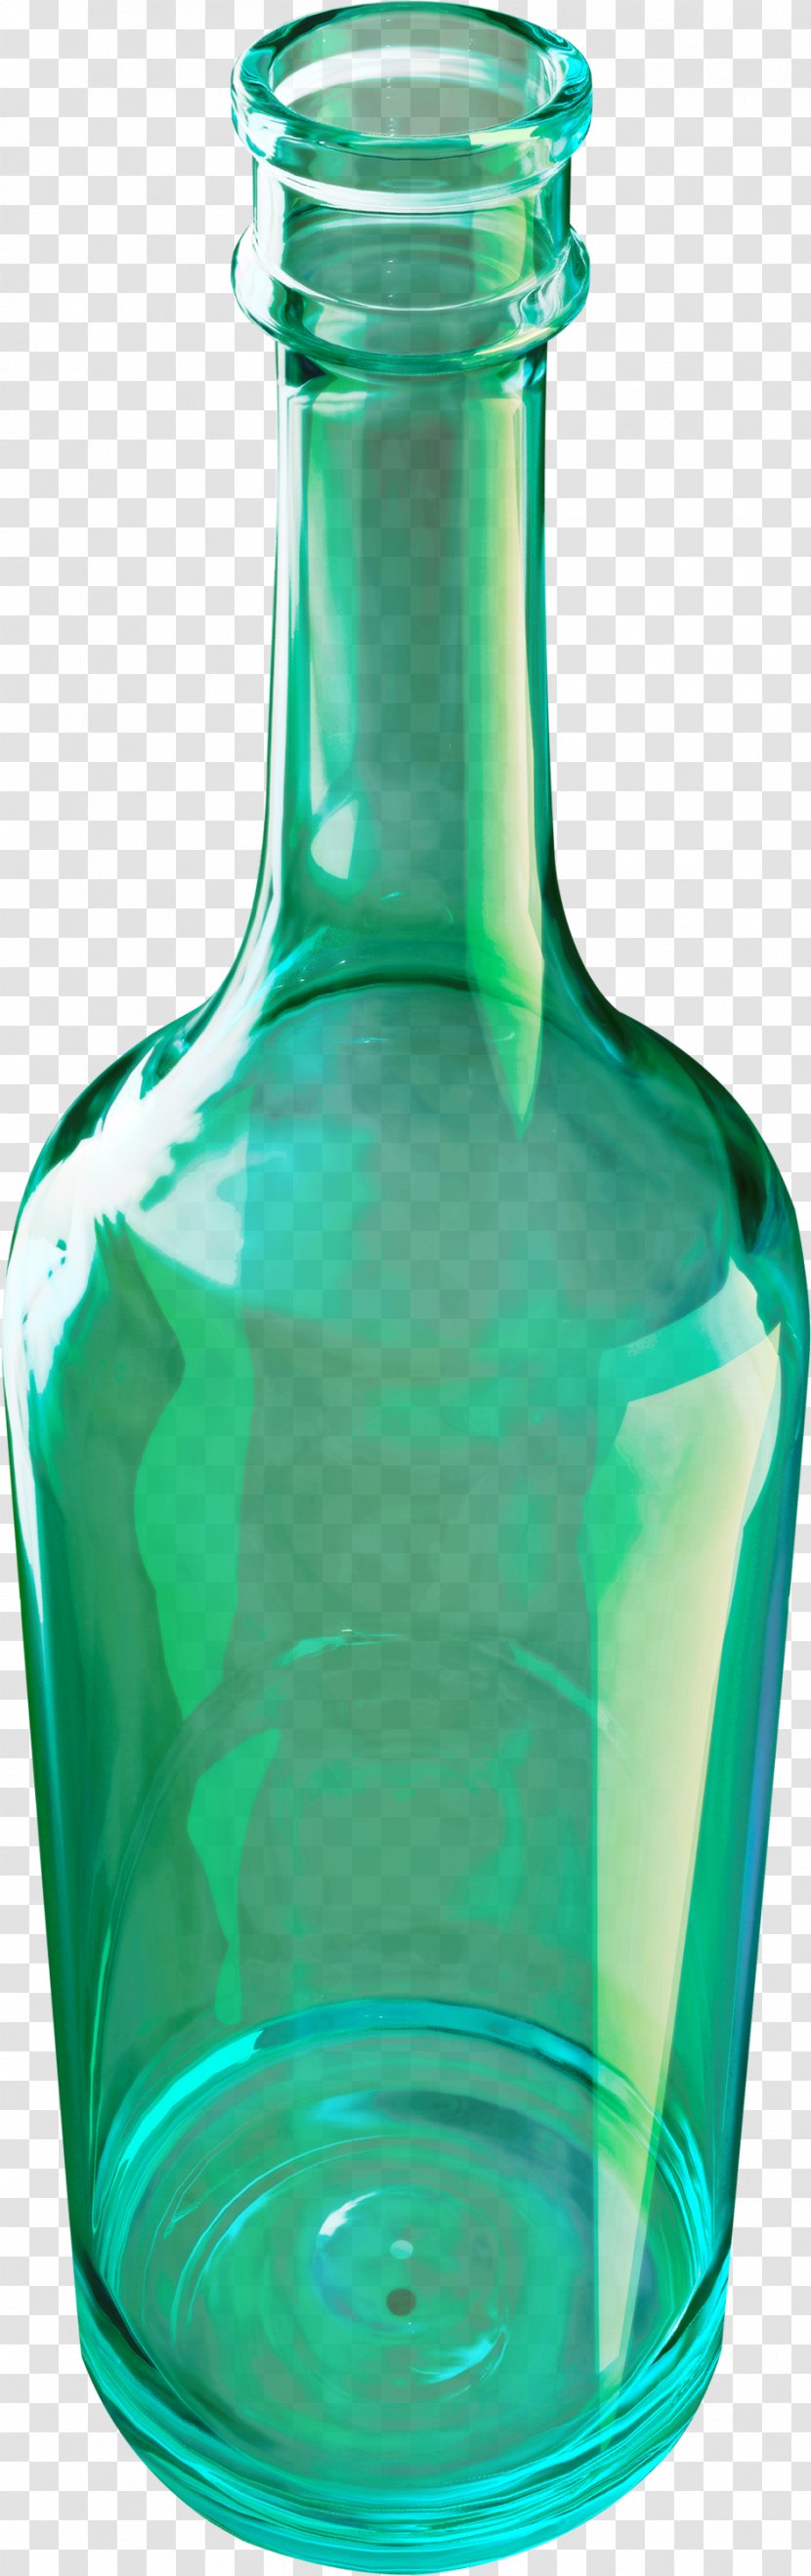 Bottle Glass Clip Art - Tinypic Transparent PNG